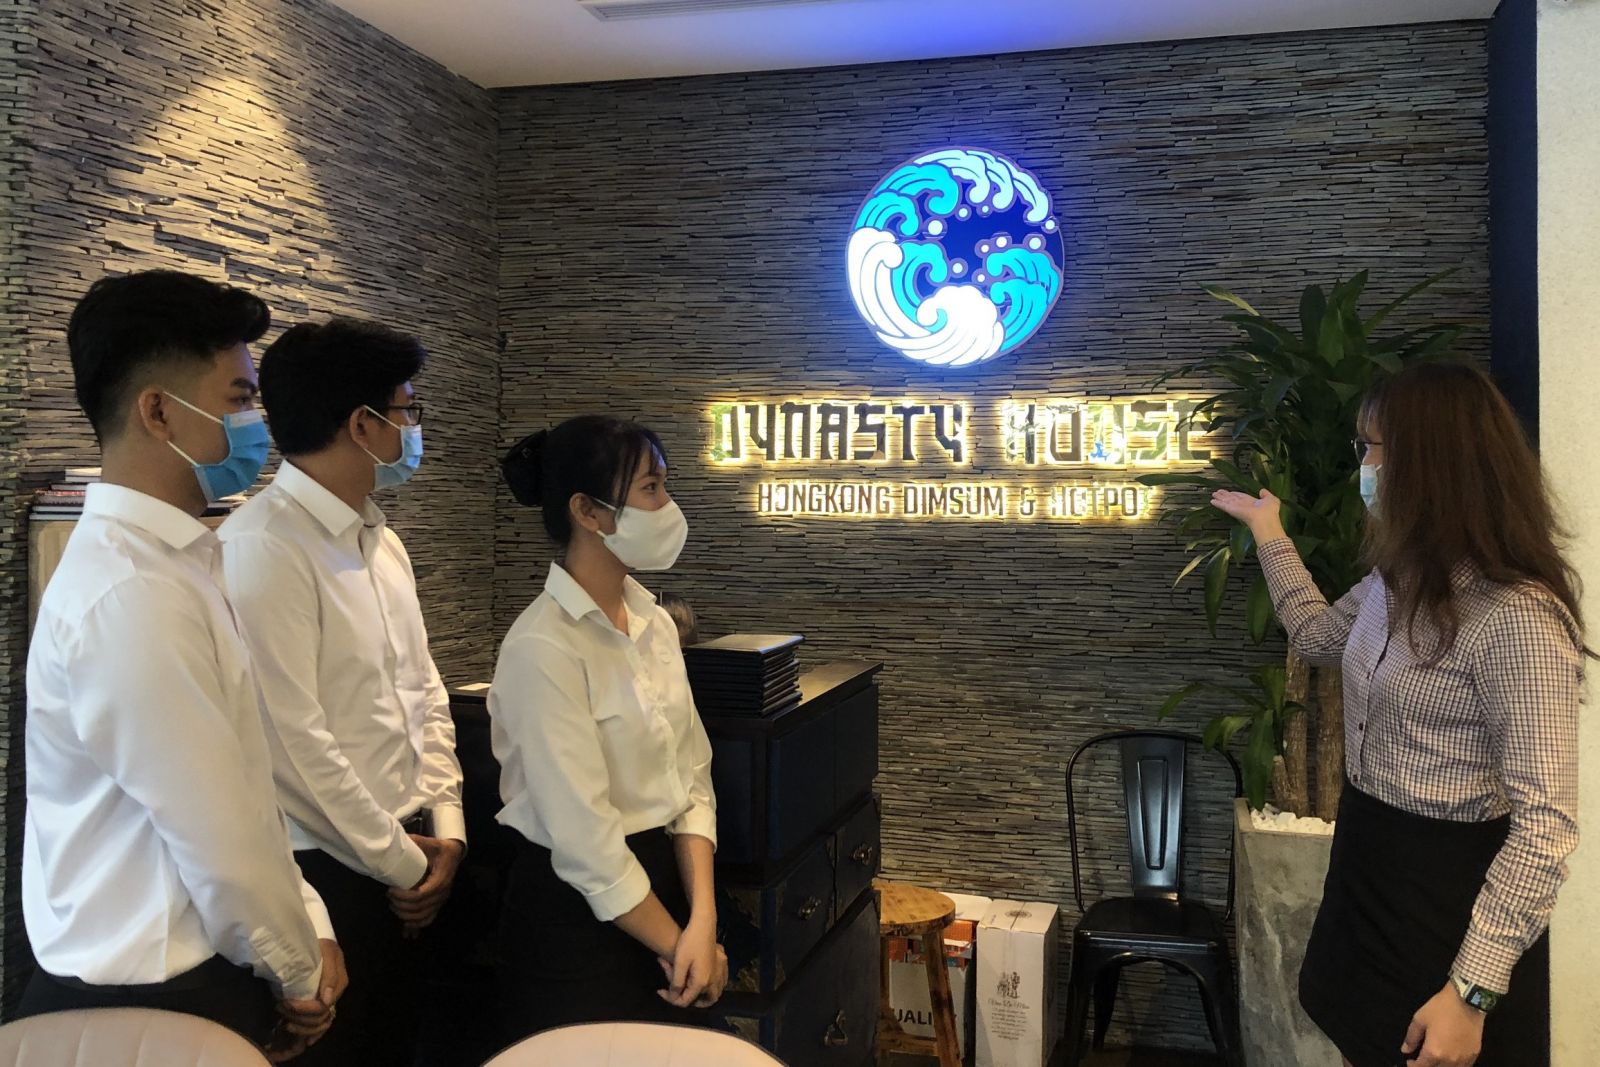  Thực tập sinh tìm hiểu về Dynasty House – nhà hàng lẩu và dimsum theo phong cách Hong Kong, thuộc hệ thống Nova FnB.